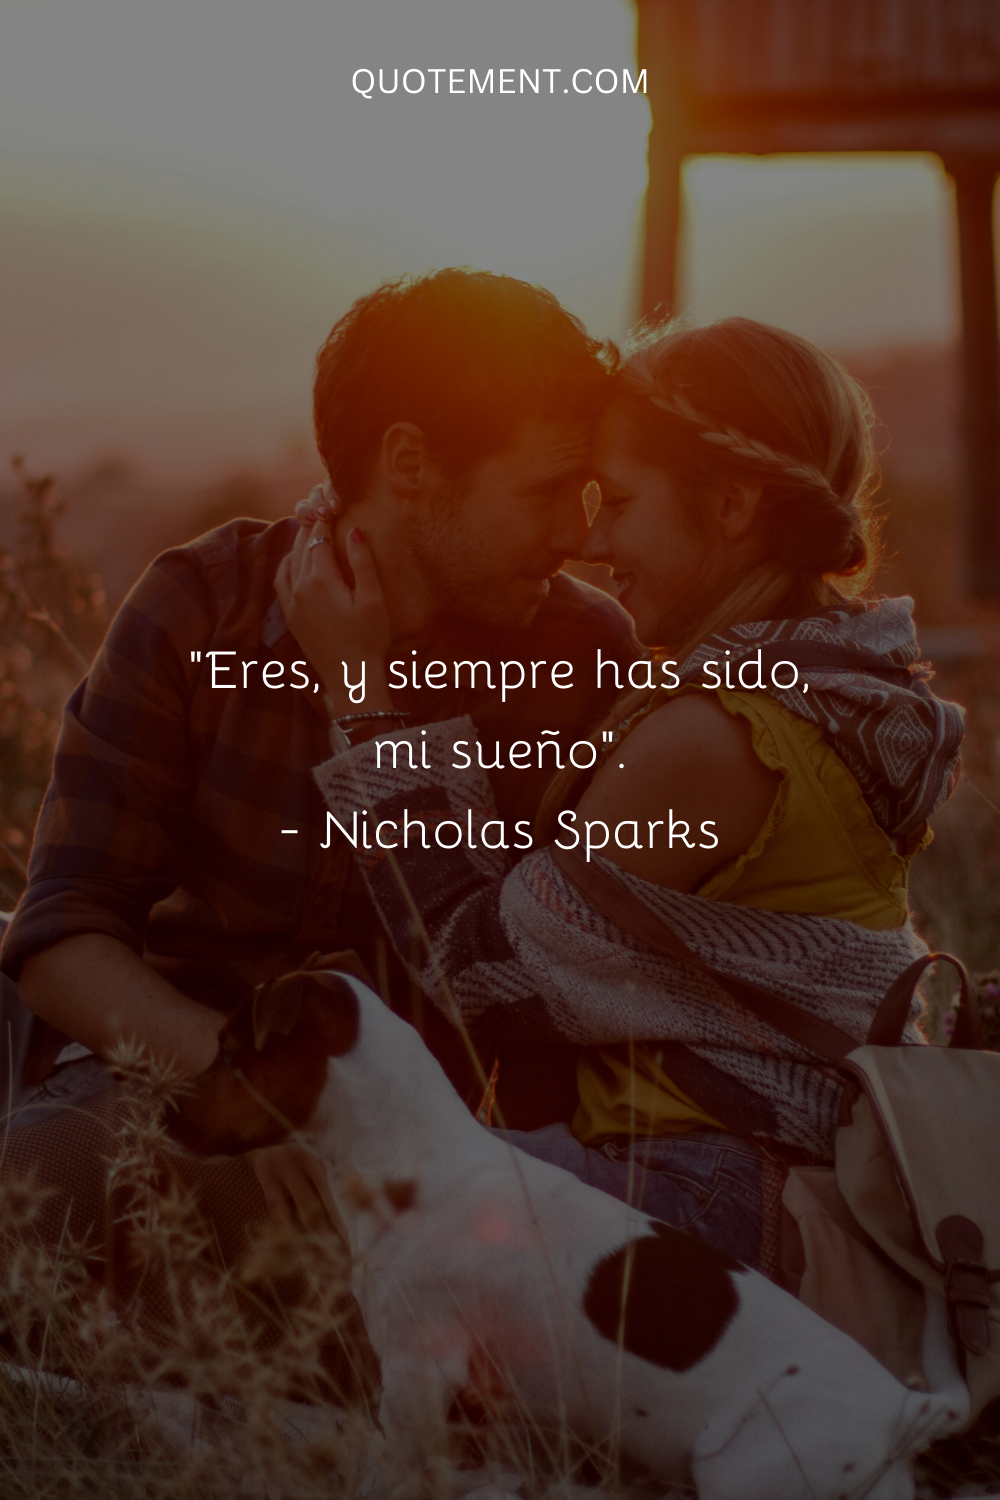 "Eres, y siempre has sido, mi sueño."- Nicholas Sparks